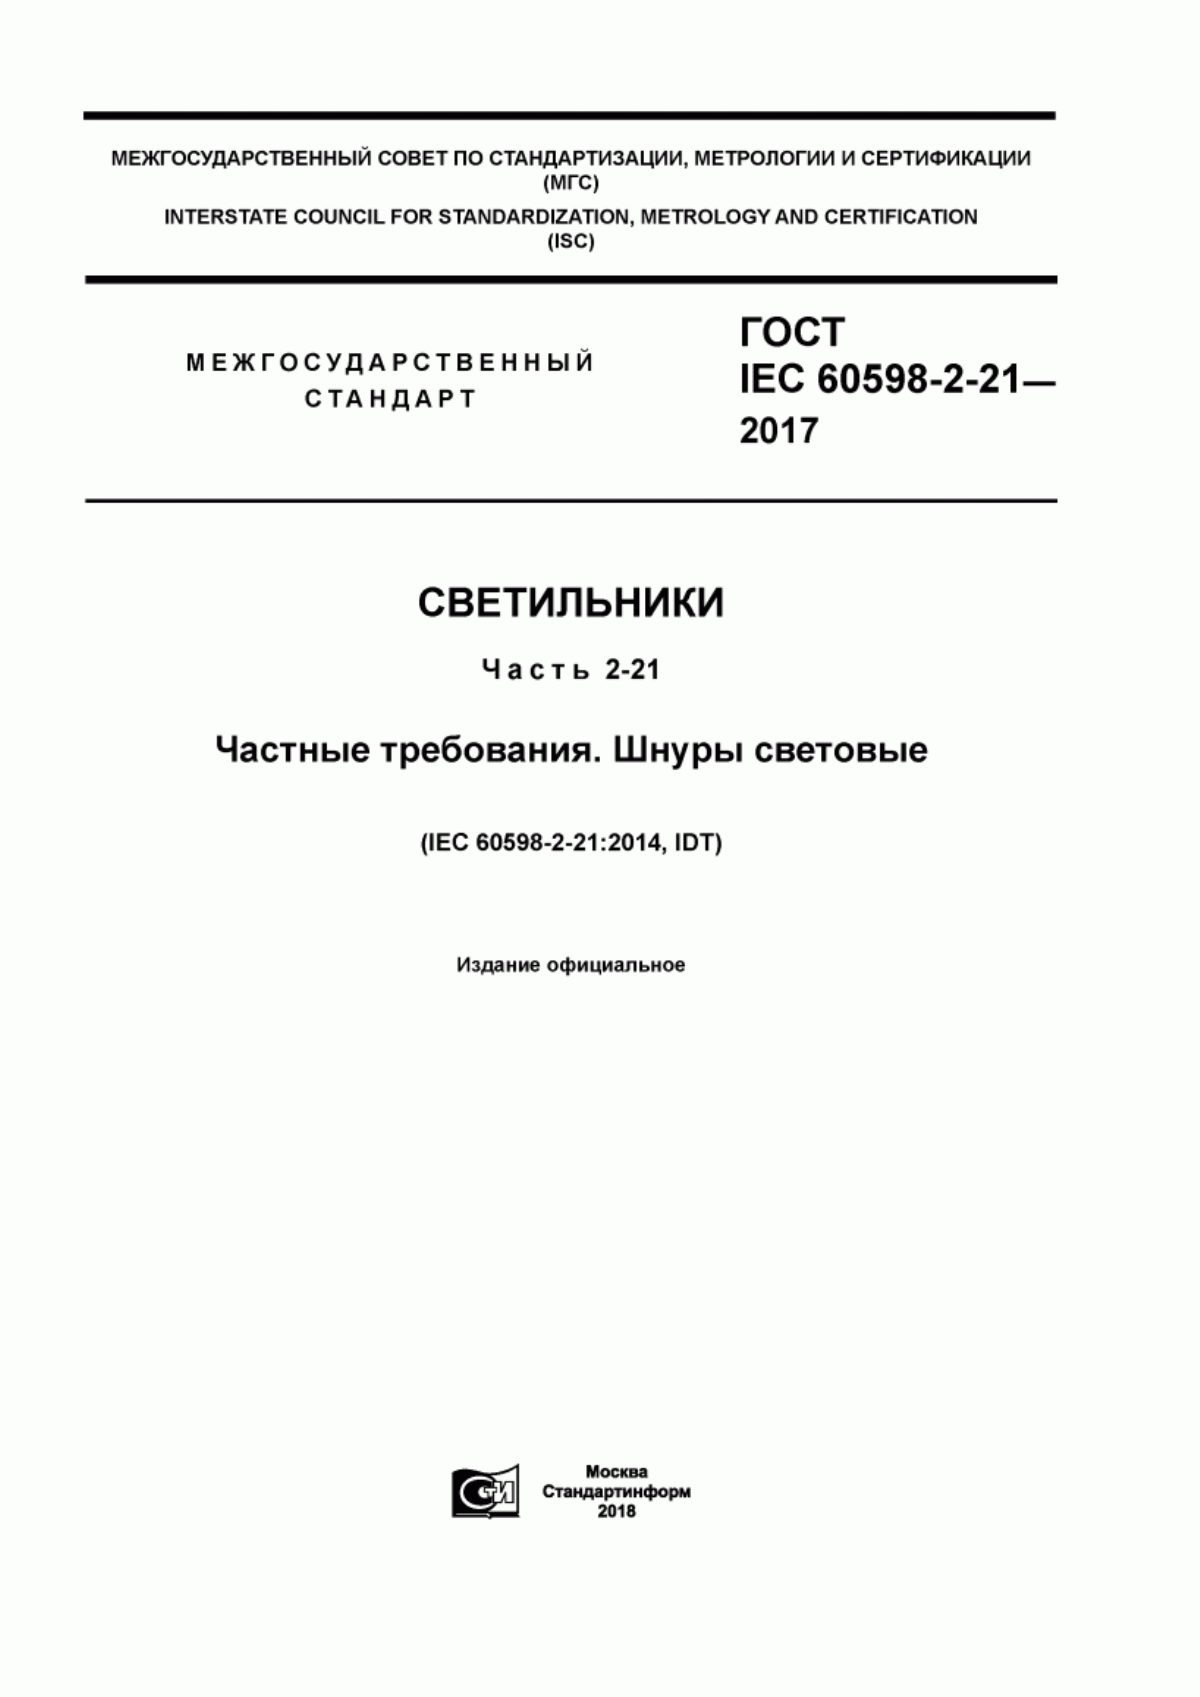 ГОСТ IEC 60598-2-21-2017 Светильники. Часть 2-21. Частные требования. Шнуры световые